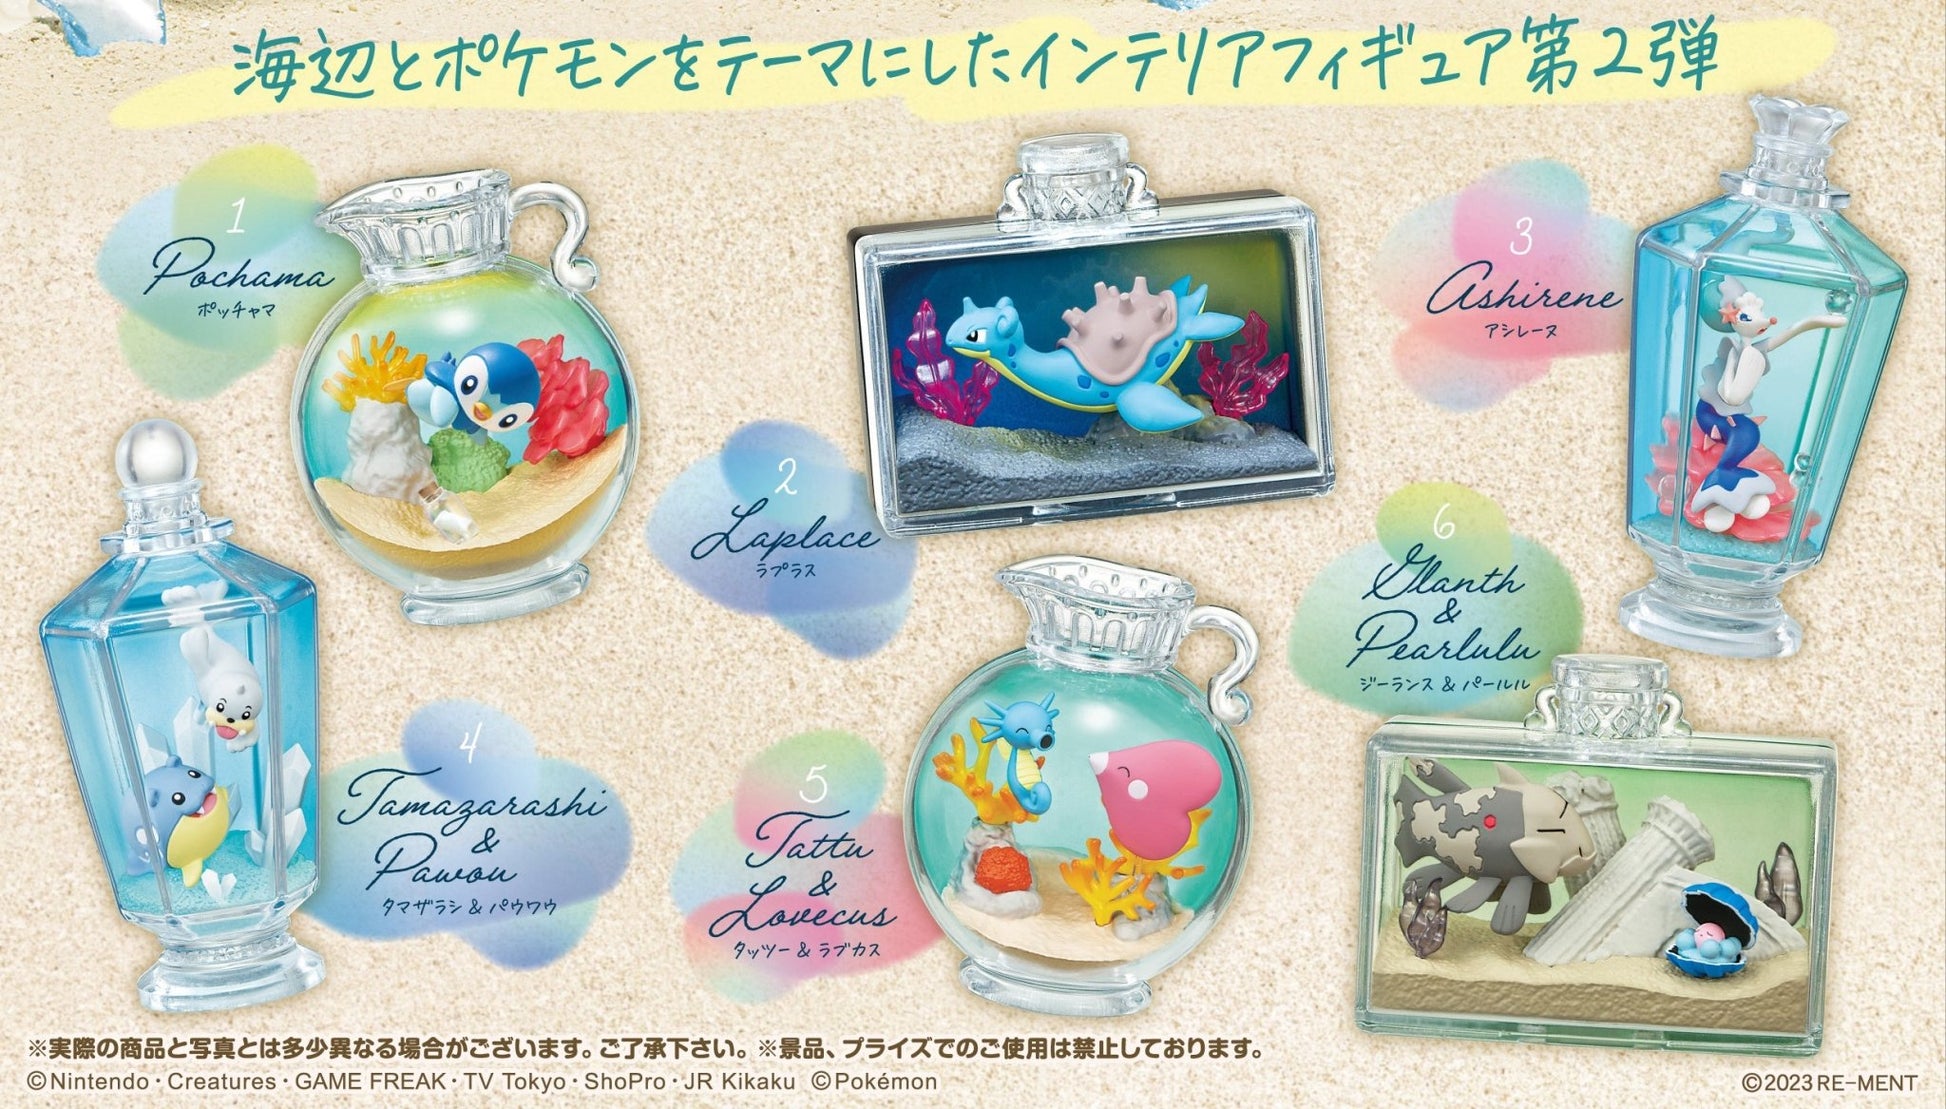 Re-Ment - Pokemon: AQUA BOTTLE Collection 2 -Memories Of The Glittering Seaside-: 1 Random Pull - Good Game Anime